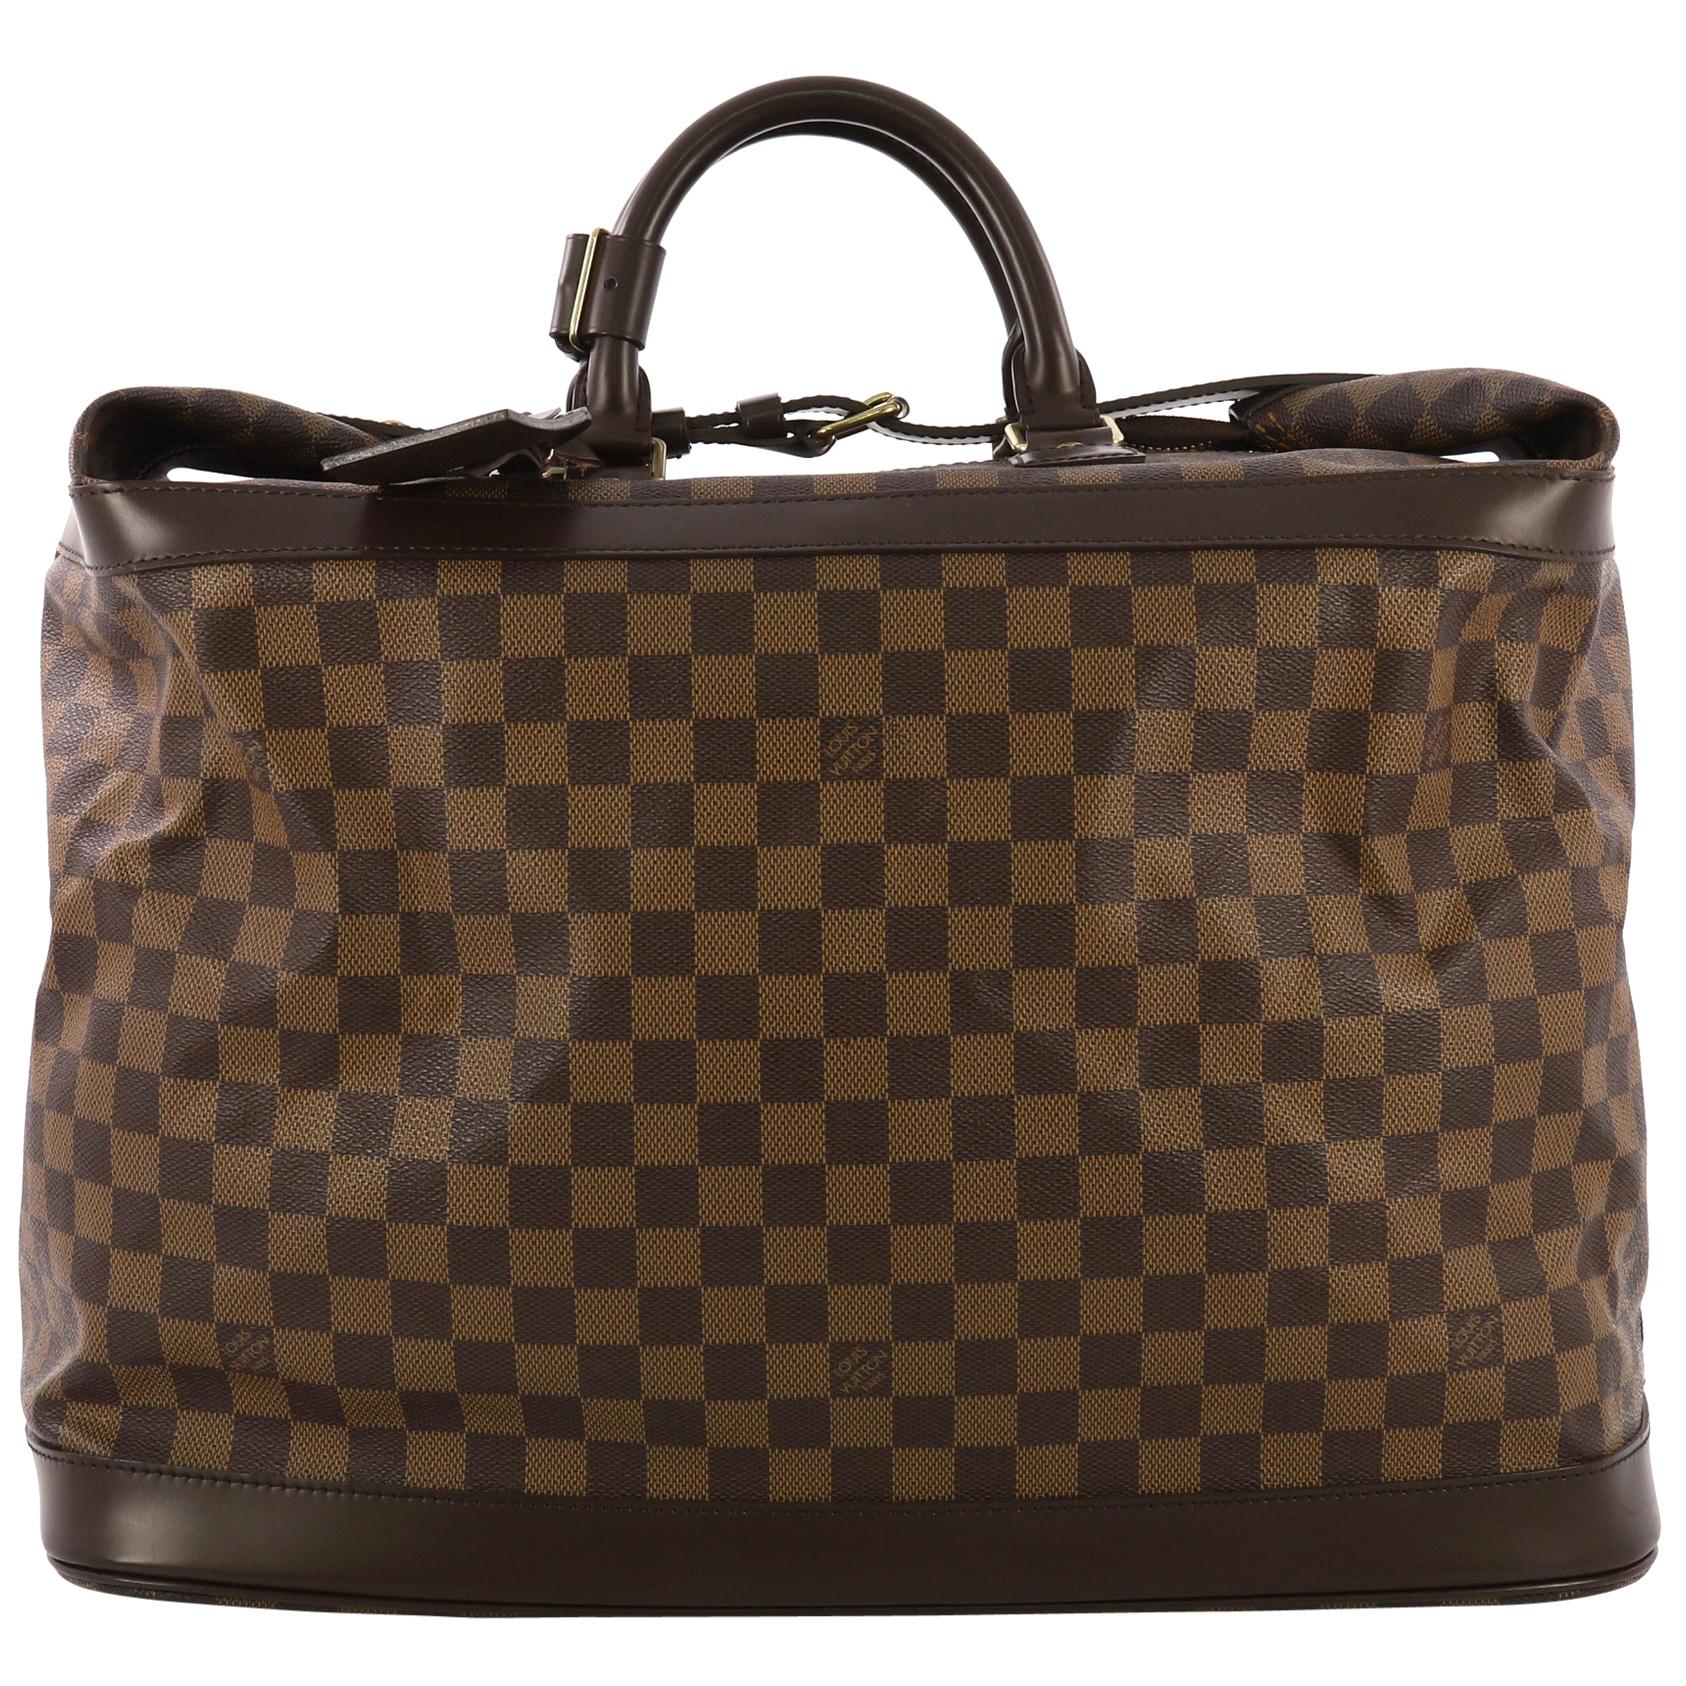 Louis Vuitton Cruiser Handbag Damier 45